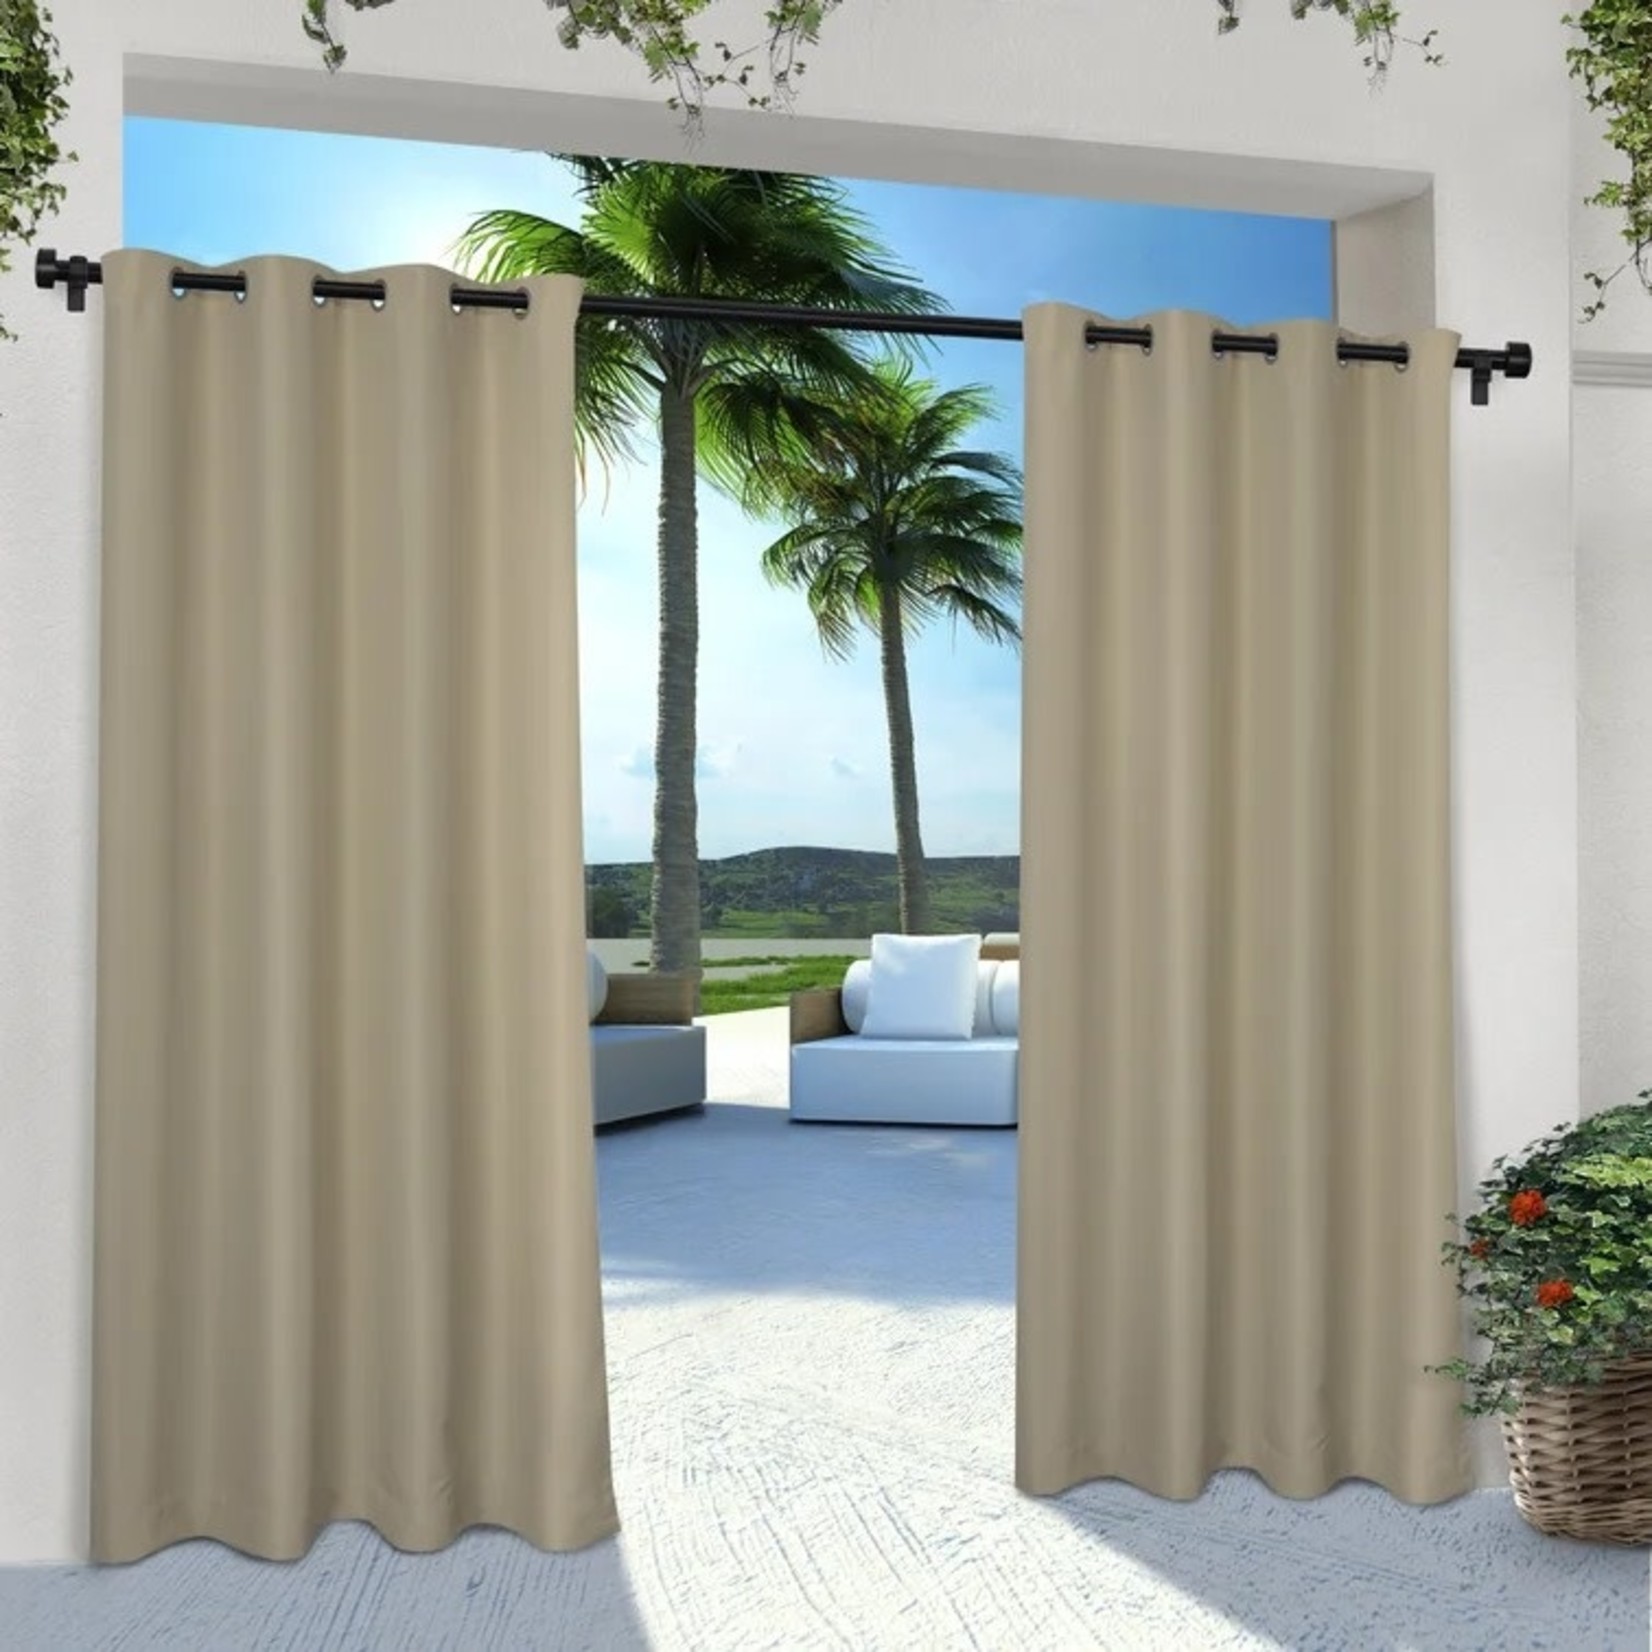 *54" x 96" Haoxuan Solid Room Darkening Indoor/Outdoor Grommet Curtain Panels - Set 2 - Taupe